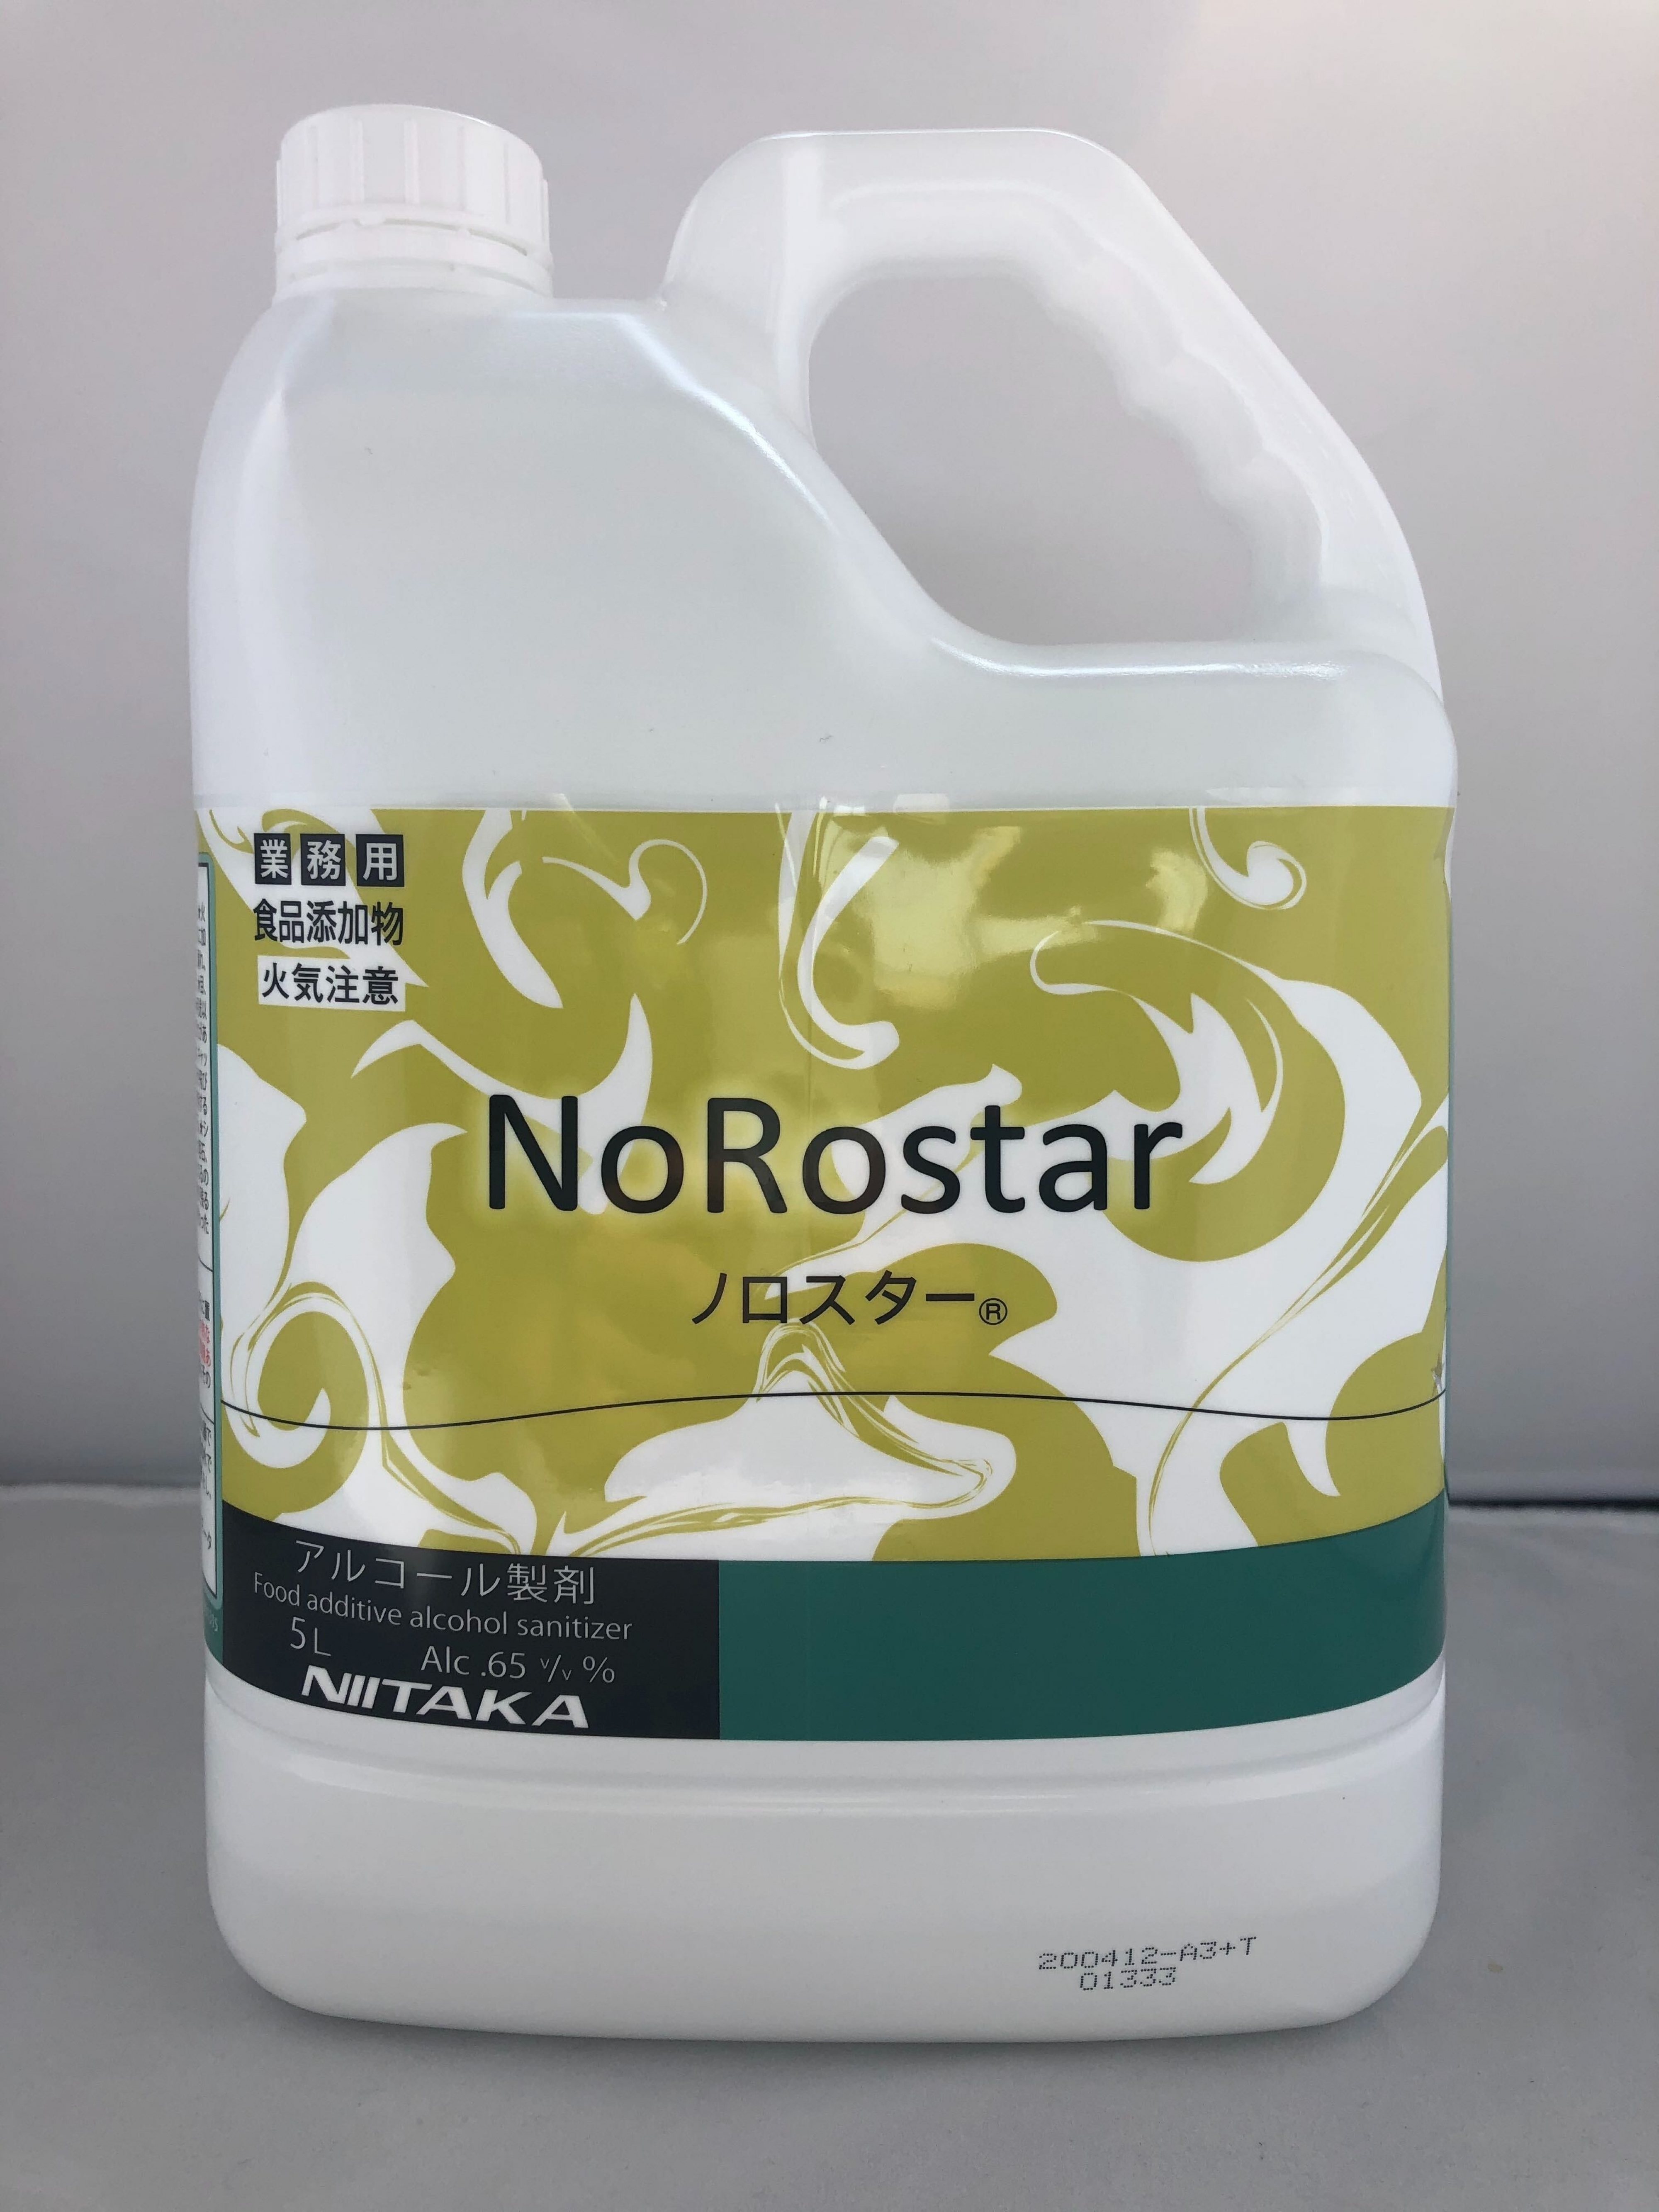 ノロスター【食品添加物エタノール製剤】 | ニイタカ / 5L | 【業務用